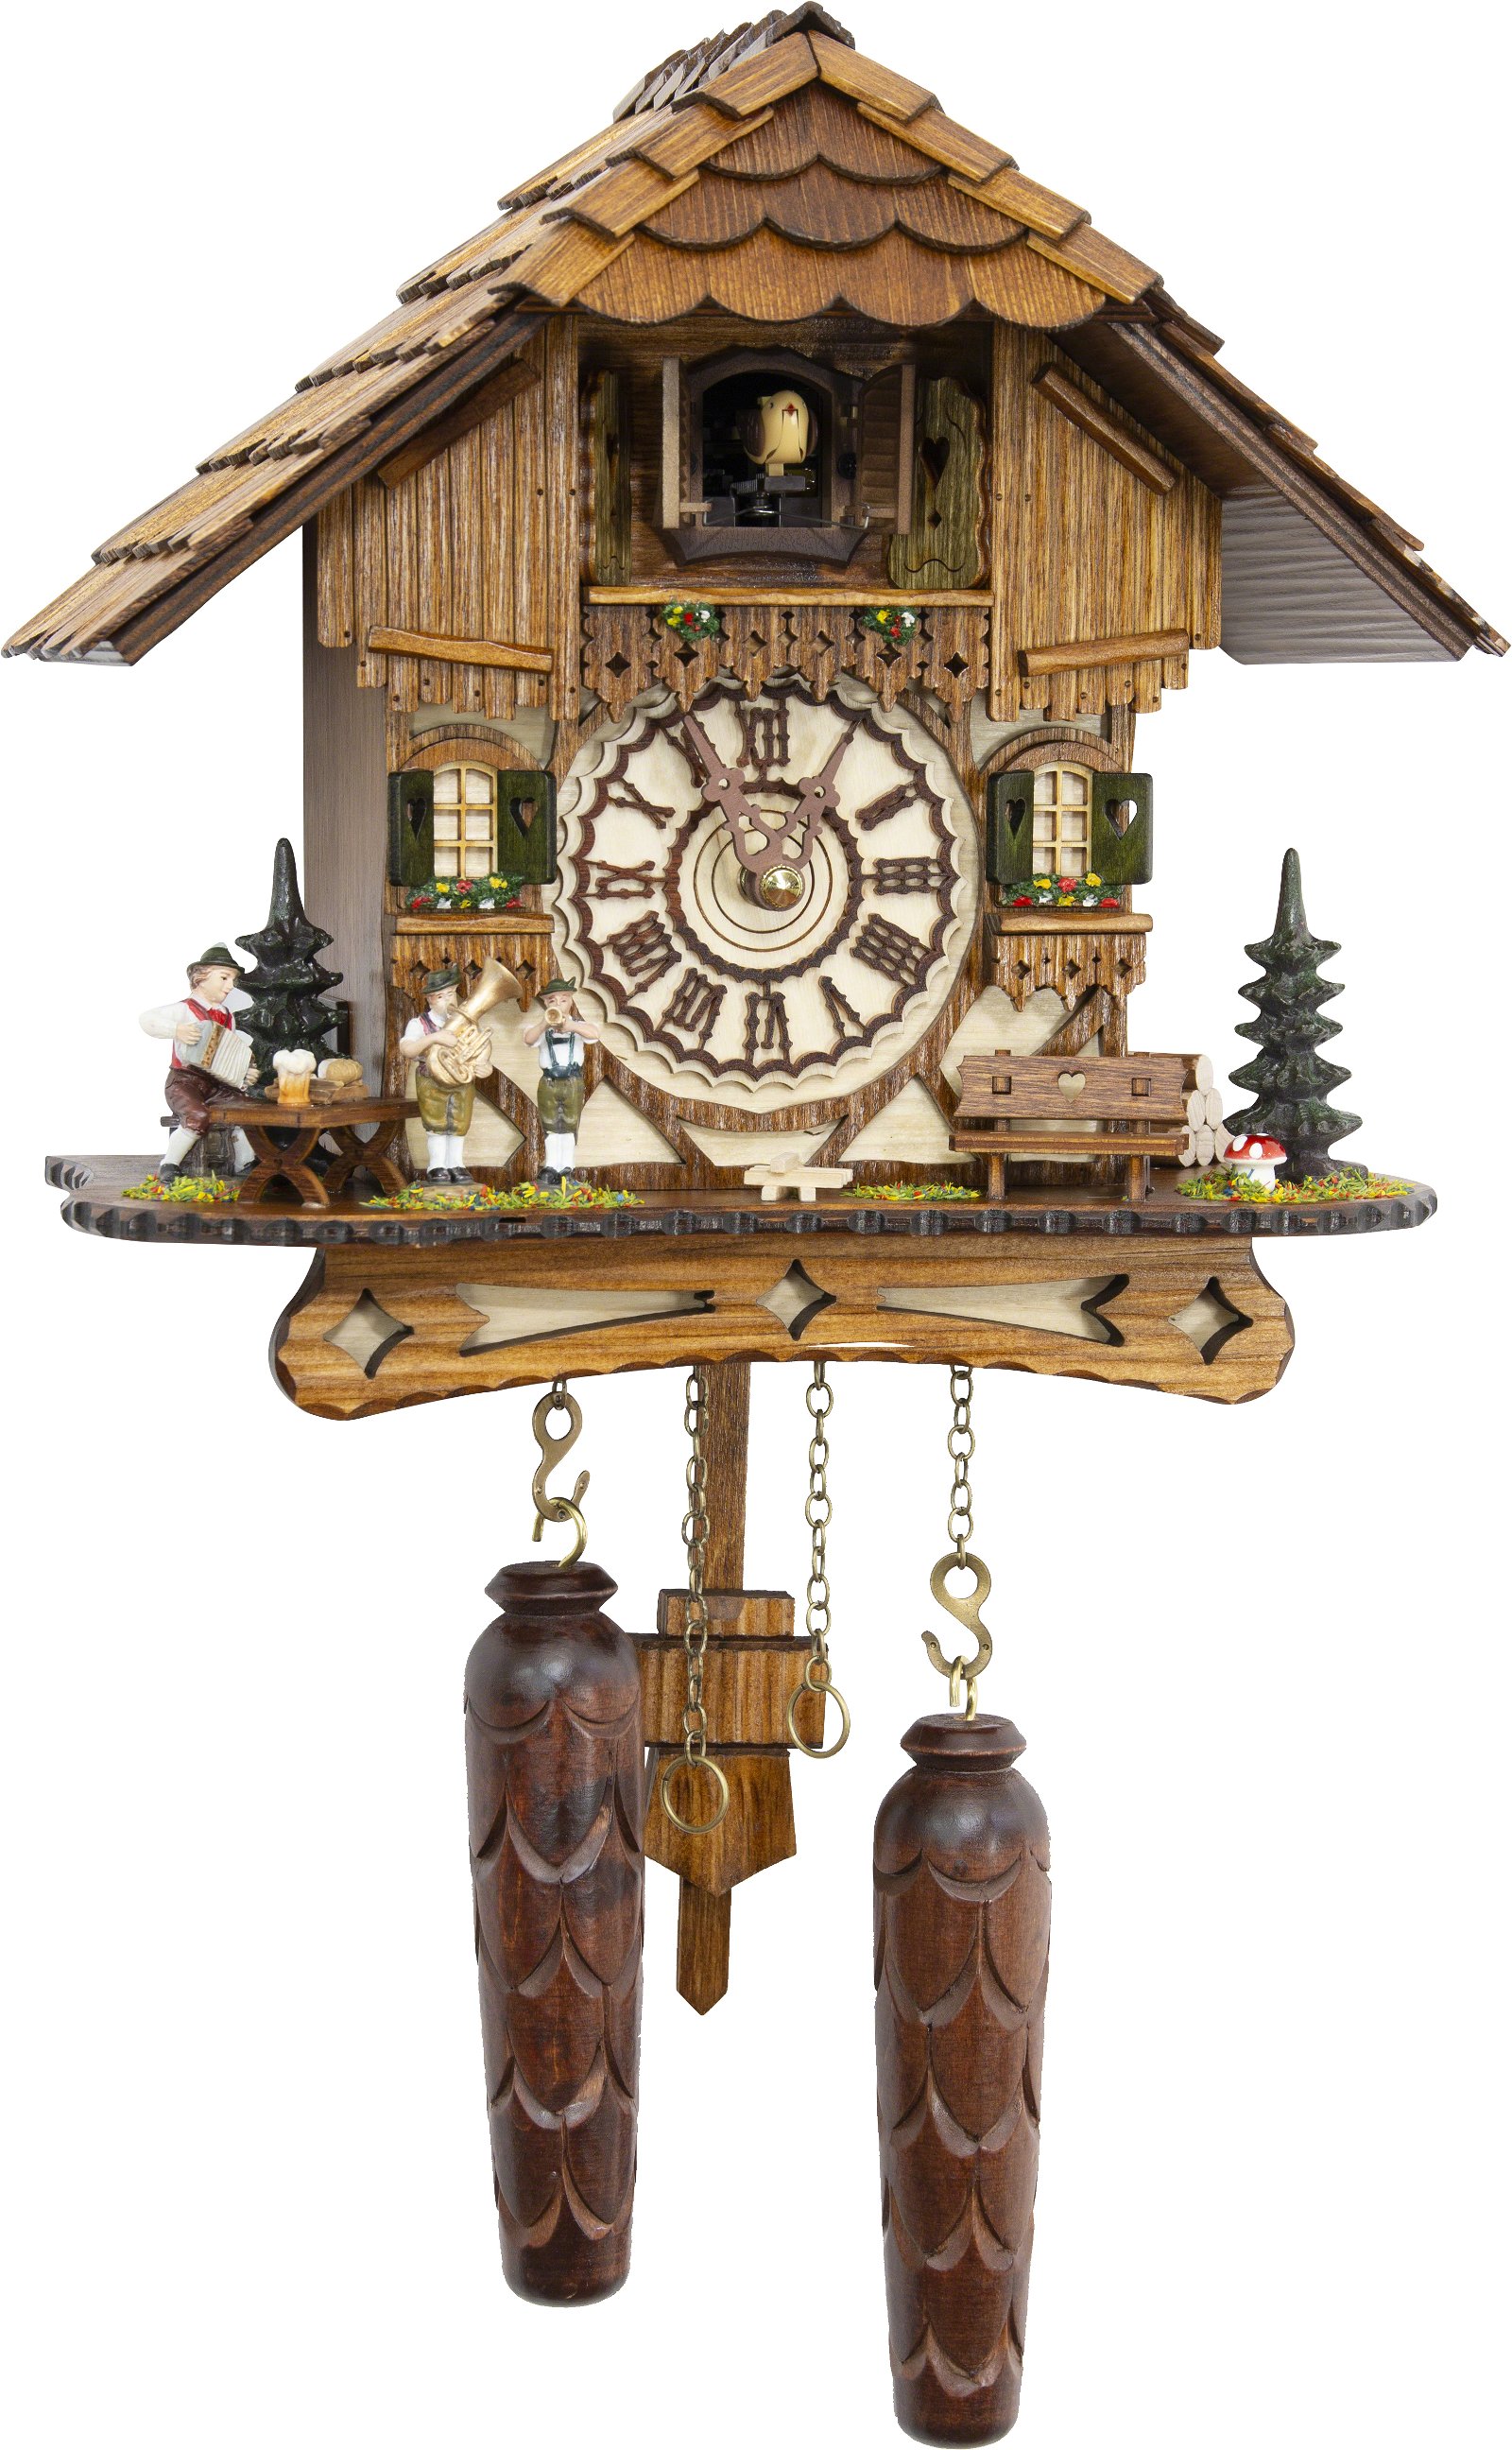 Kuckucksuhr Quarz-Uhrwerk Chalet-Stil 24cm von Trenkle Uhren